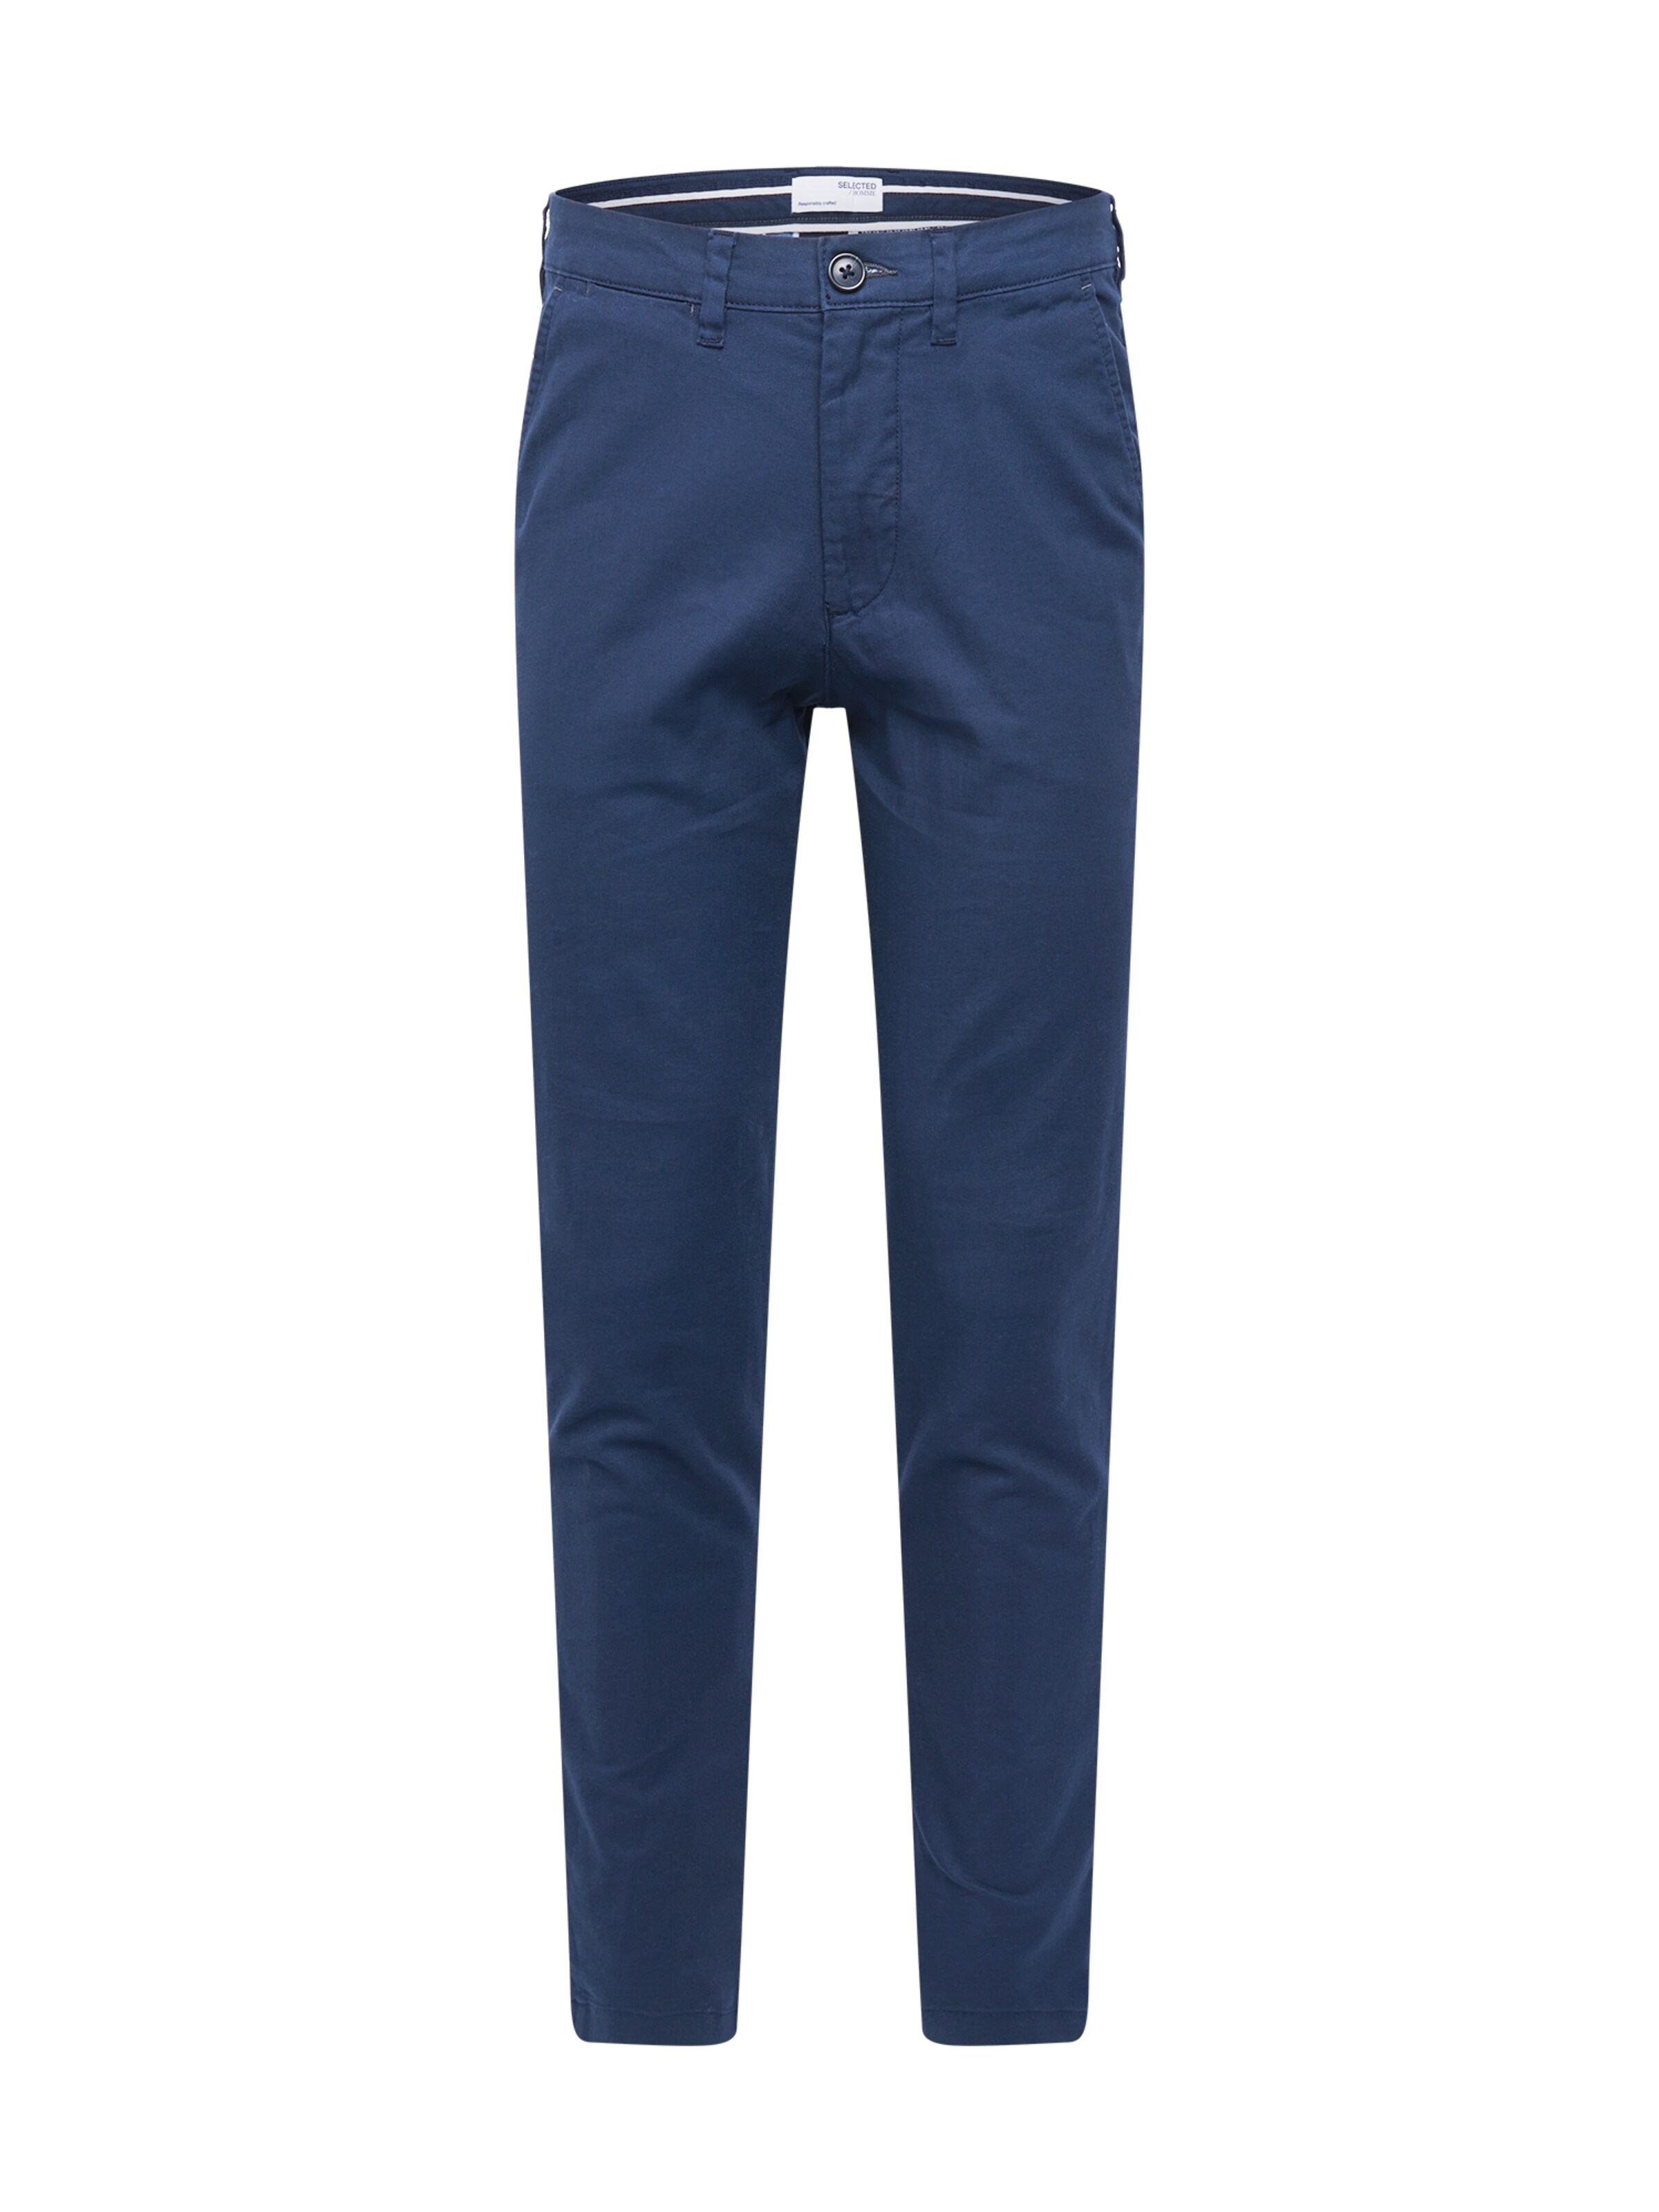 Selected Homme Pantalon Chino 32 Bleu